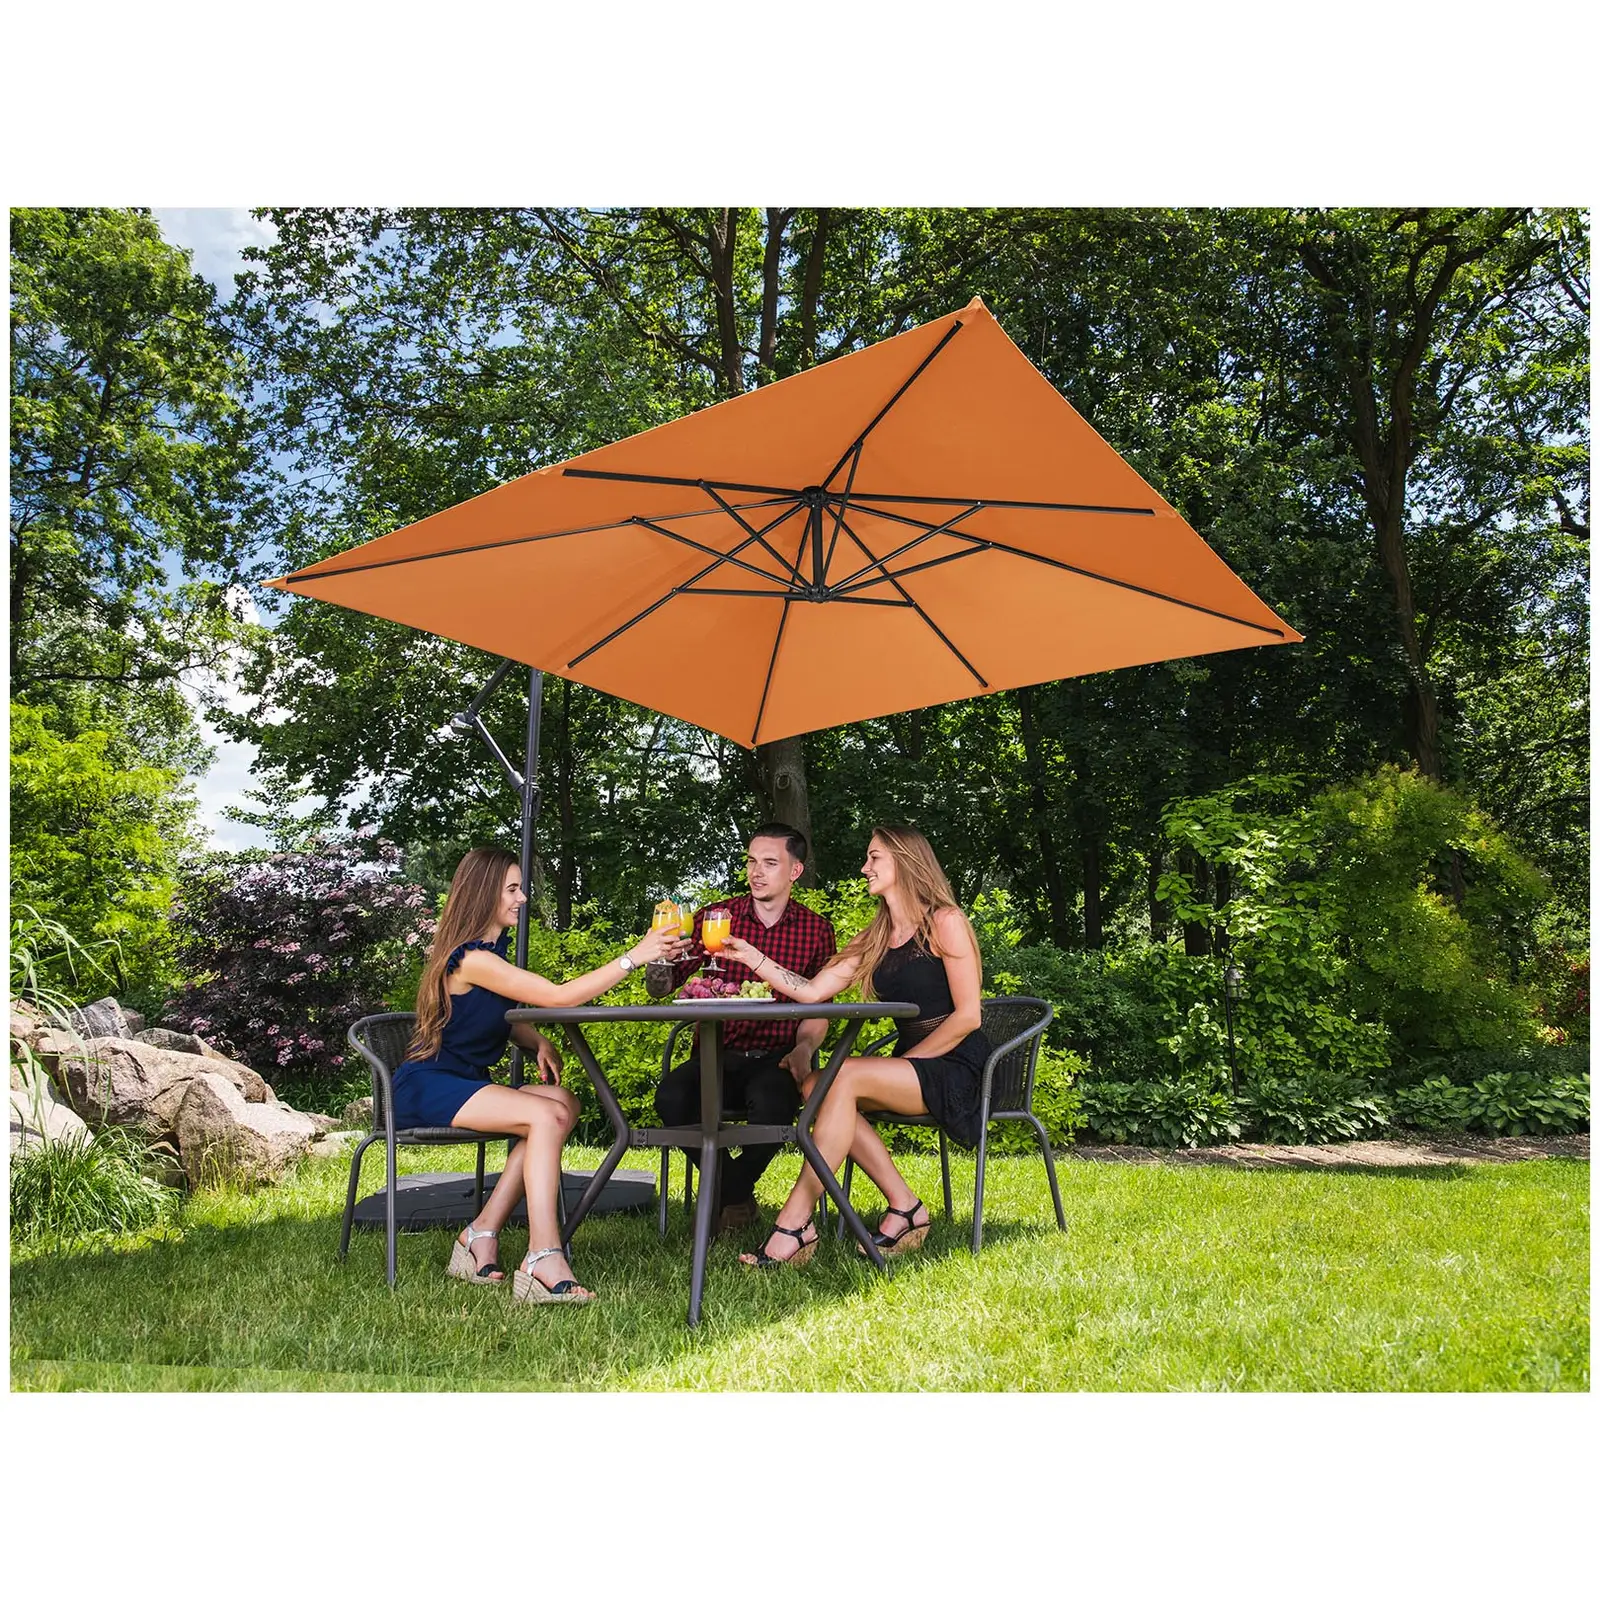 Sombrilla de semáforo - naranja - cuadrada - 250 x 250 cm - inclinable